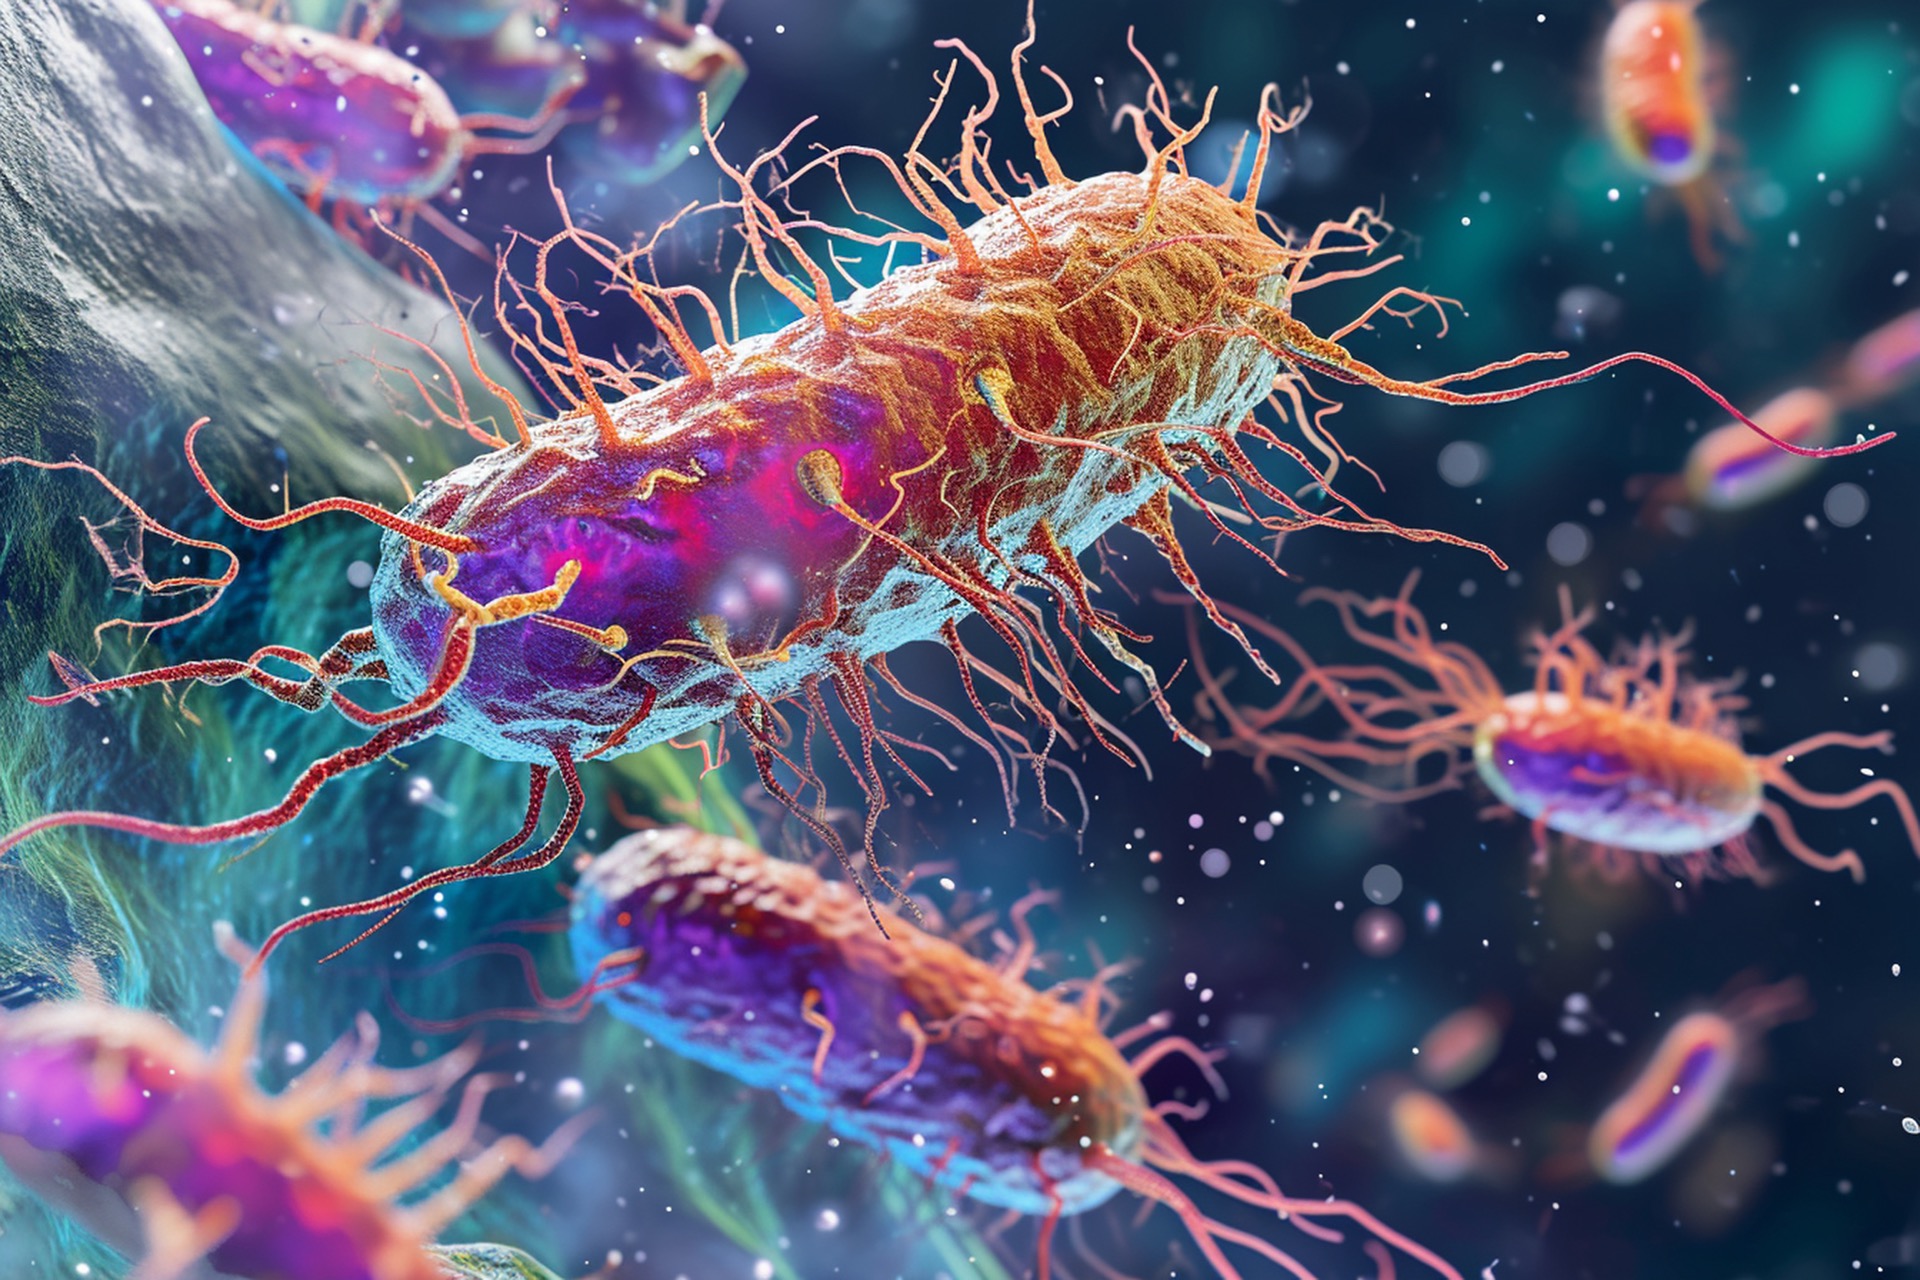 Le pilus (pili au pluriel) est une structure importante et diverse à la surface des bactéries, impliquée dans de nombreux processus, tels que l'adhésion, la motilité et le transfert de gènes. © Denis Yevtekhov, Adobe Stock